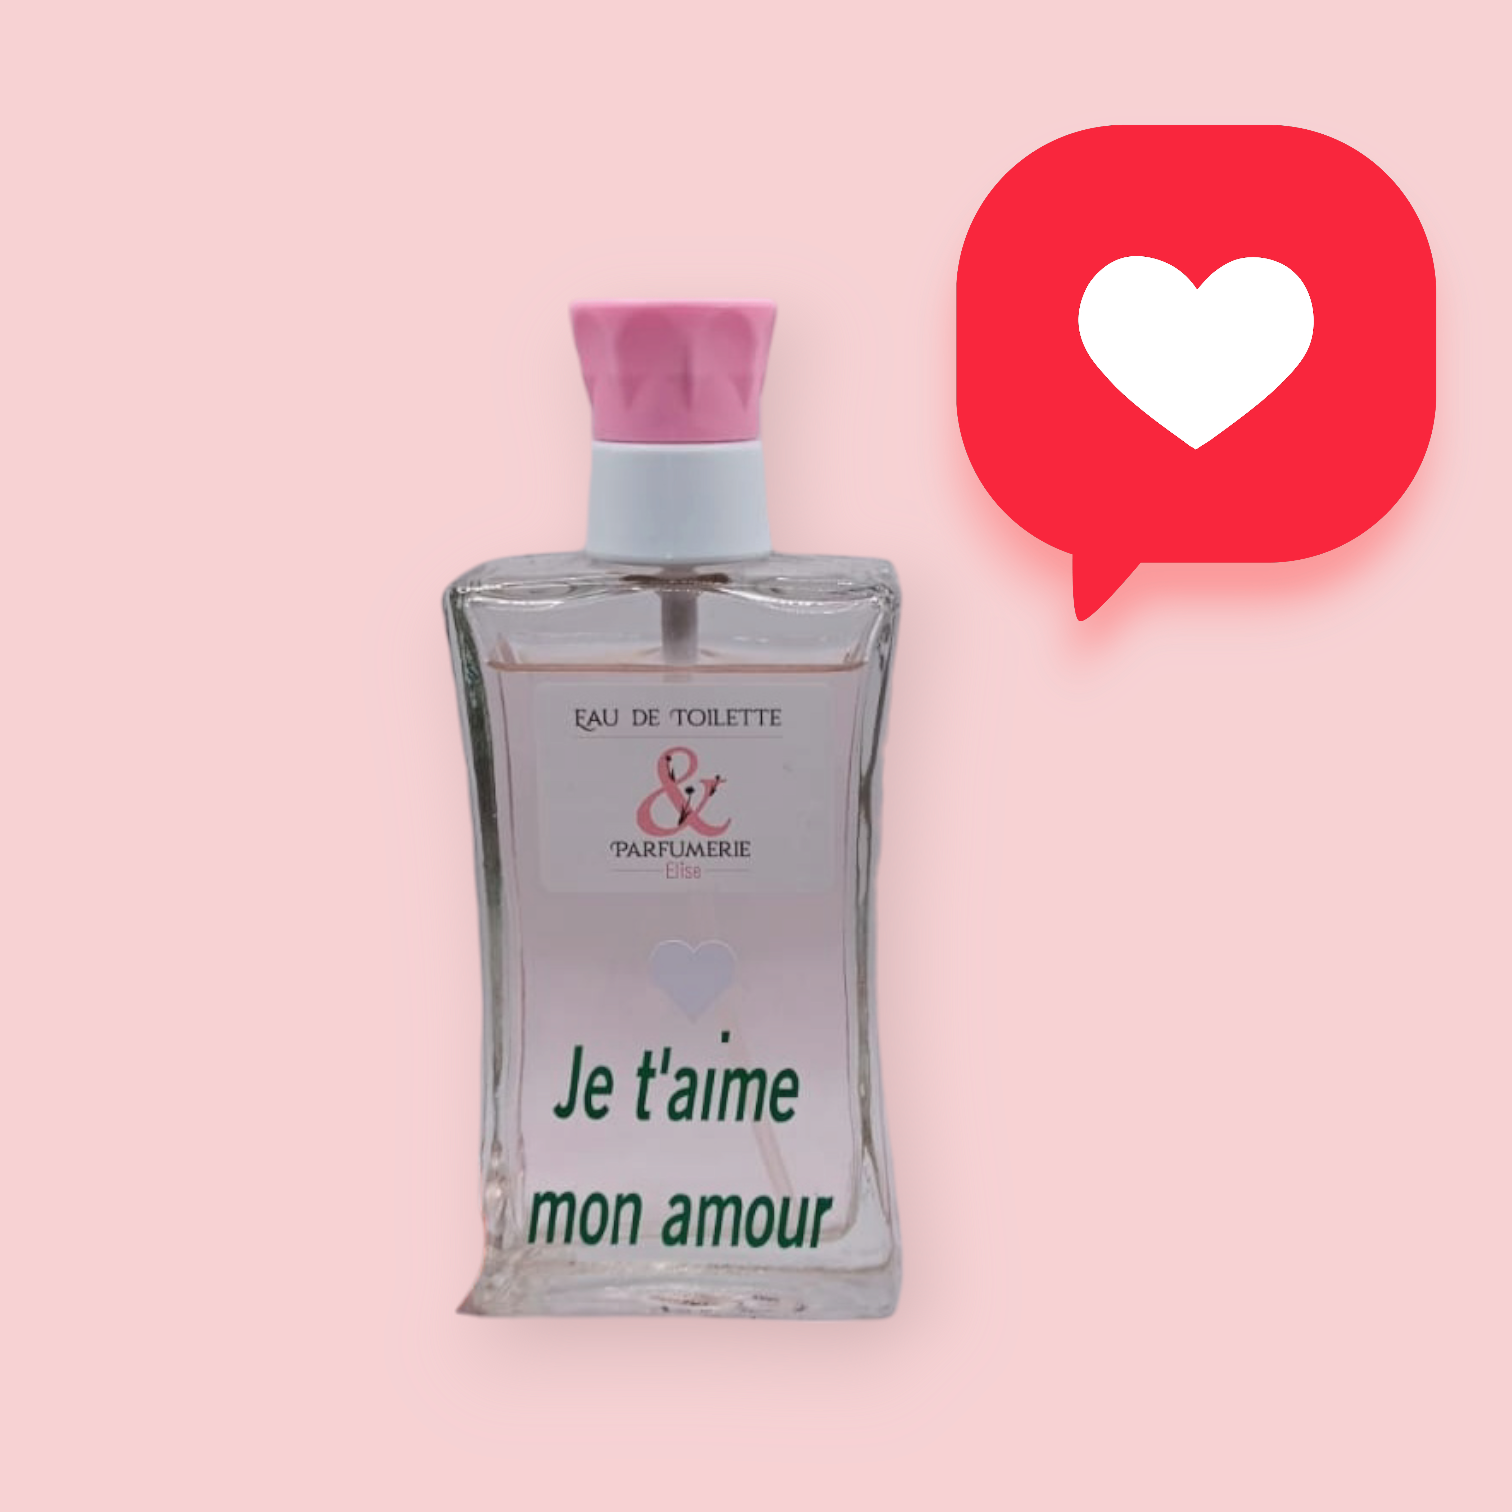 N 29 - Générique de Amor Amor pour femme personnalisé "Je t'aime mon amour"